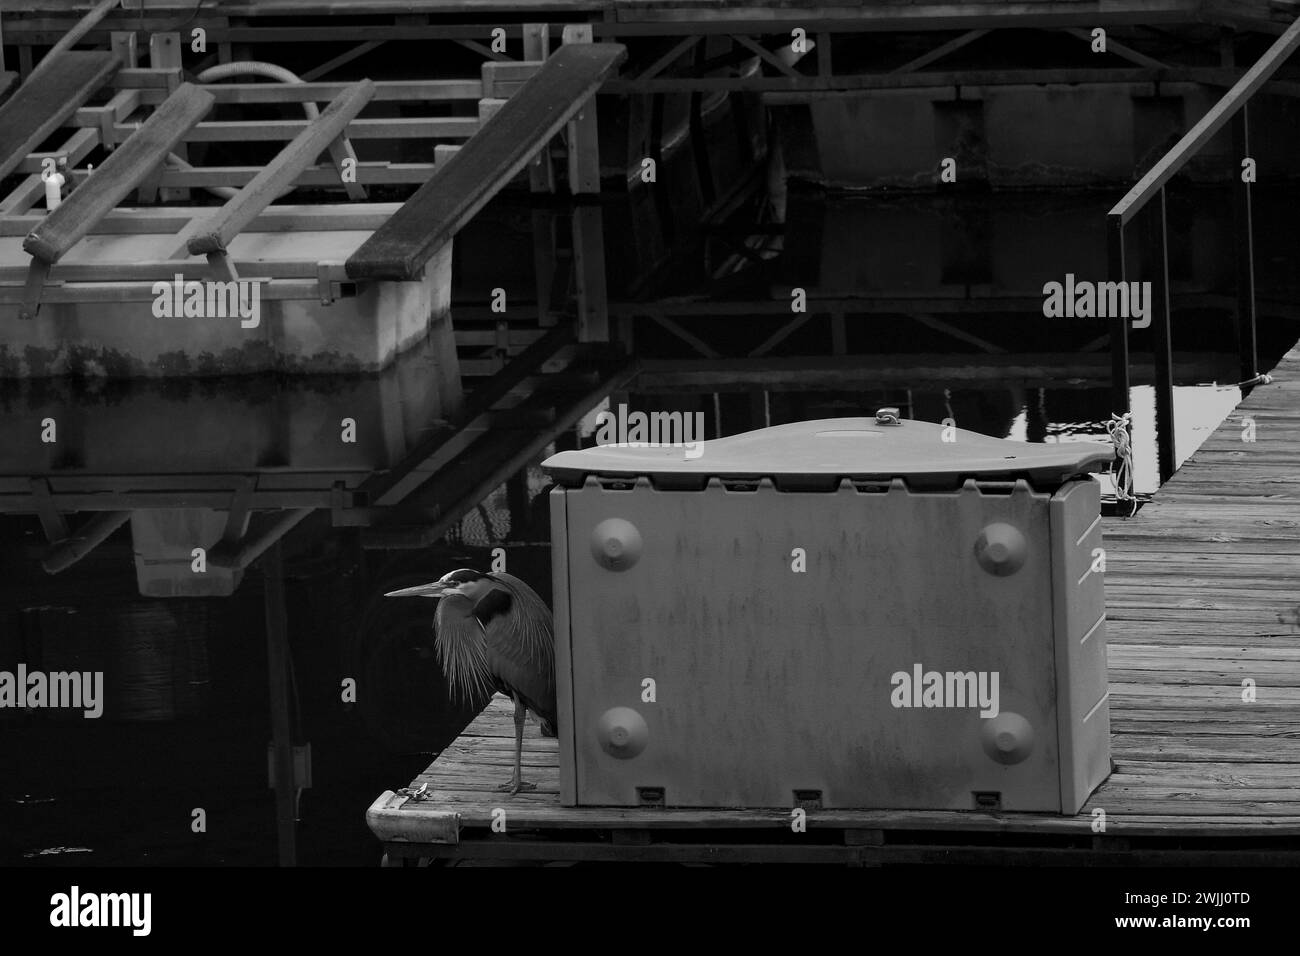 Großer Blaureiher, der auf einem Dock neben einem Bootskasten sitzt und im Hintergrund einen Jet-Skilift in Schwarz-weiß hat. Stockfoto